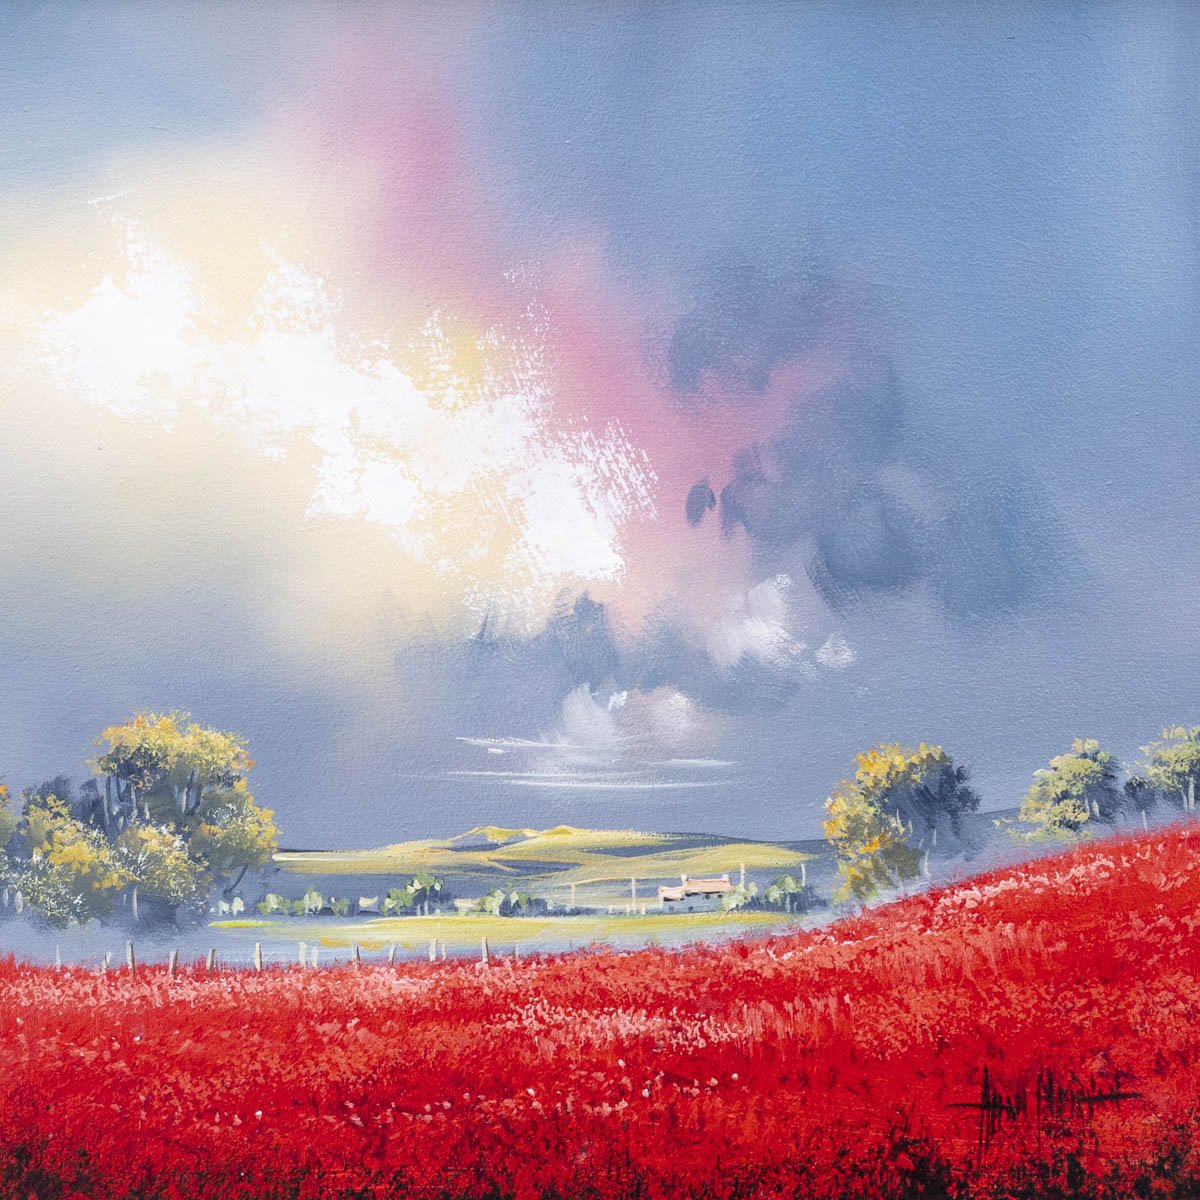 Red Fields - Original Allan Morgan Framed